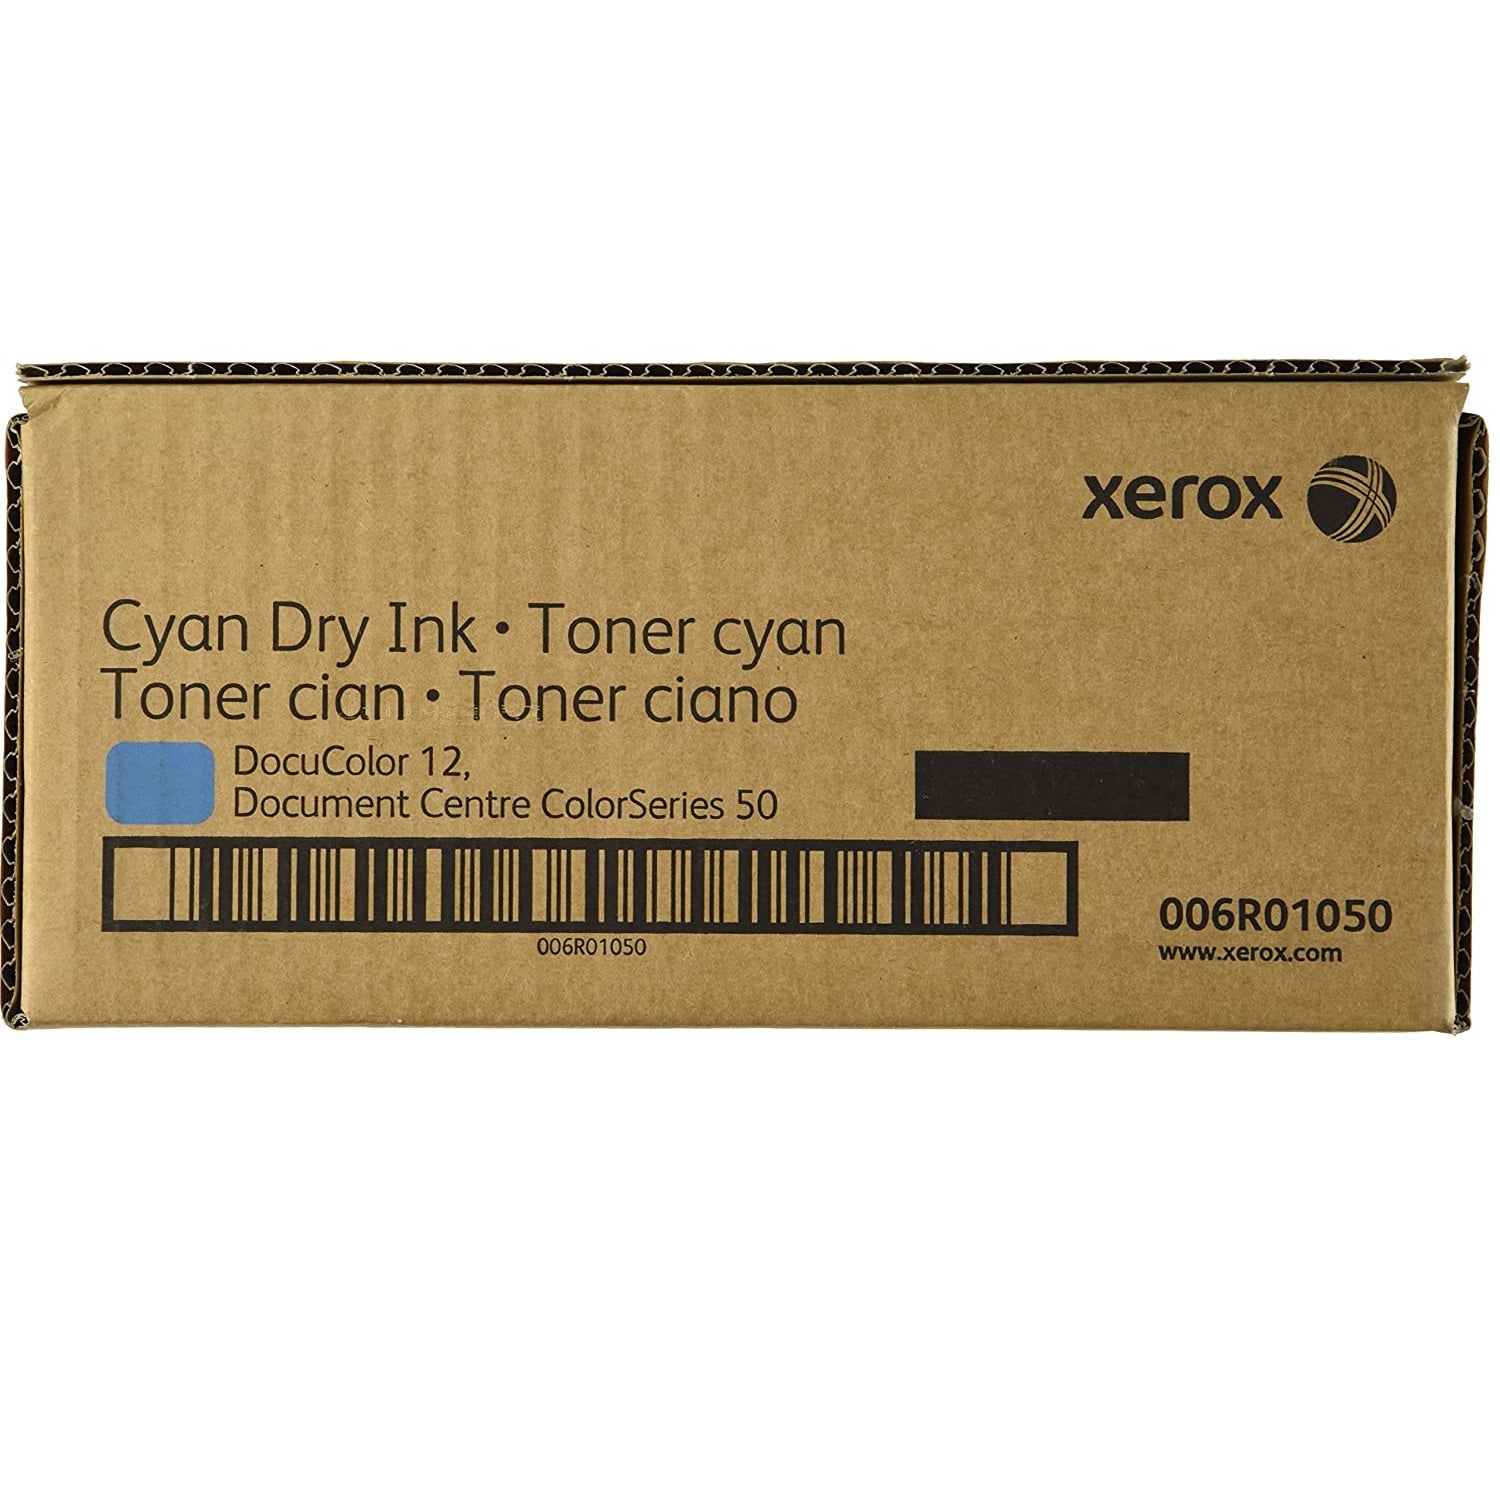 Absolute Toner Xerox 6R1050 (006R01050) Genuine OEM Cyan Dry Ink | Toner Cartridge Original Xerox Cartridges